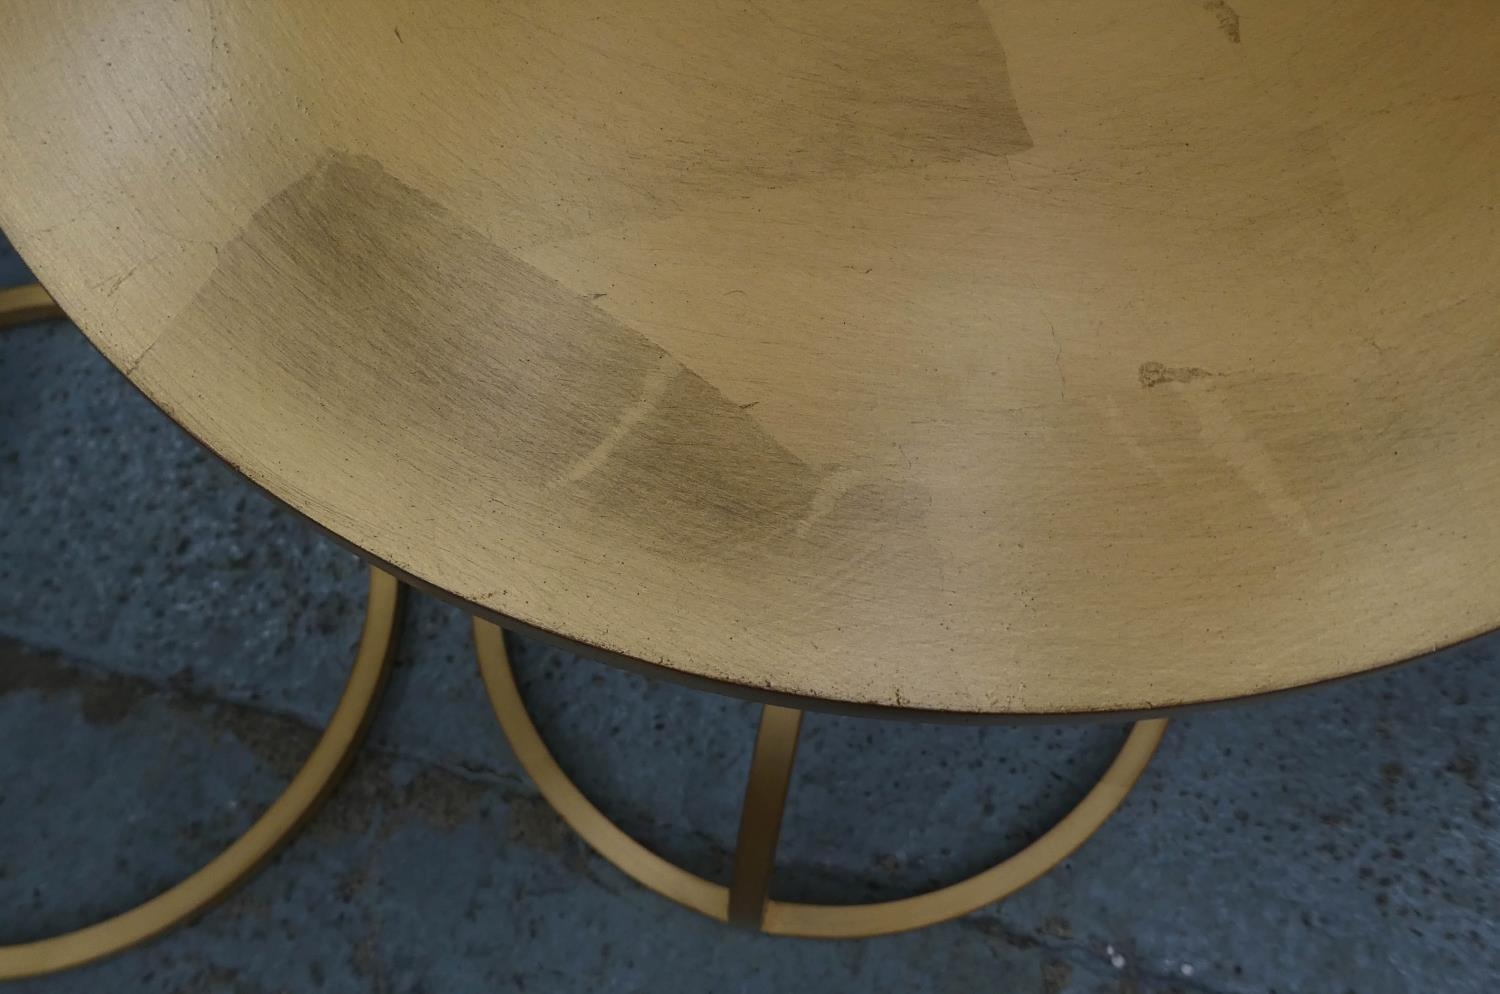 SIDE TABLES, a pair, 61cm x 44cm diam, contemporary, gilt metal. (2) - Image 3 of 4